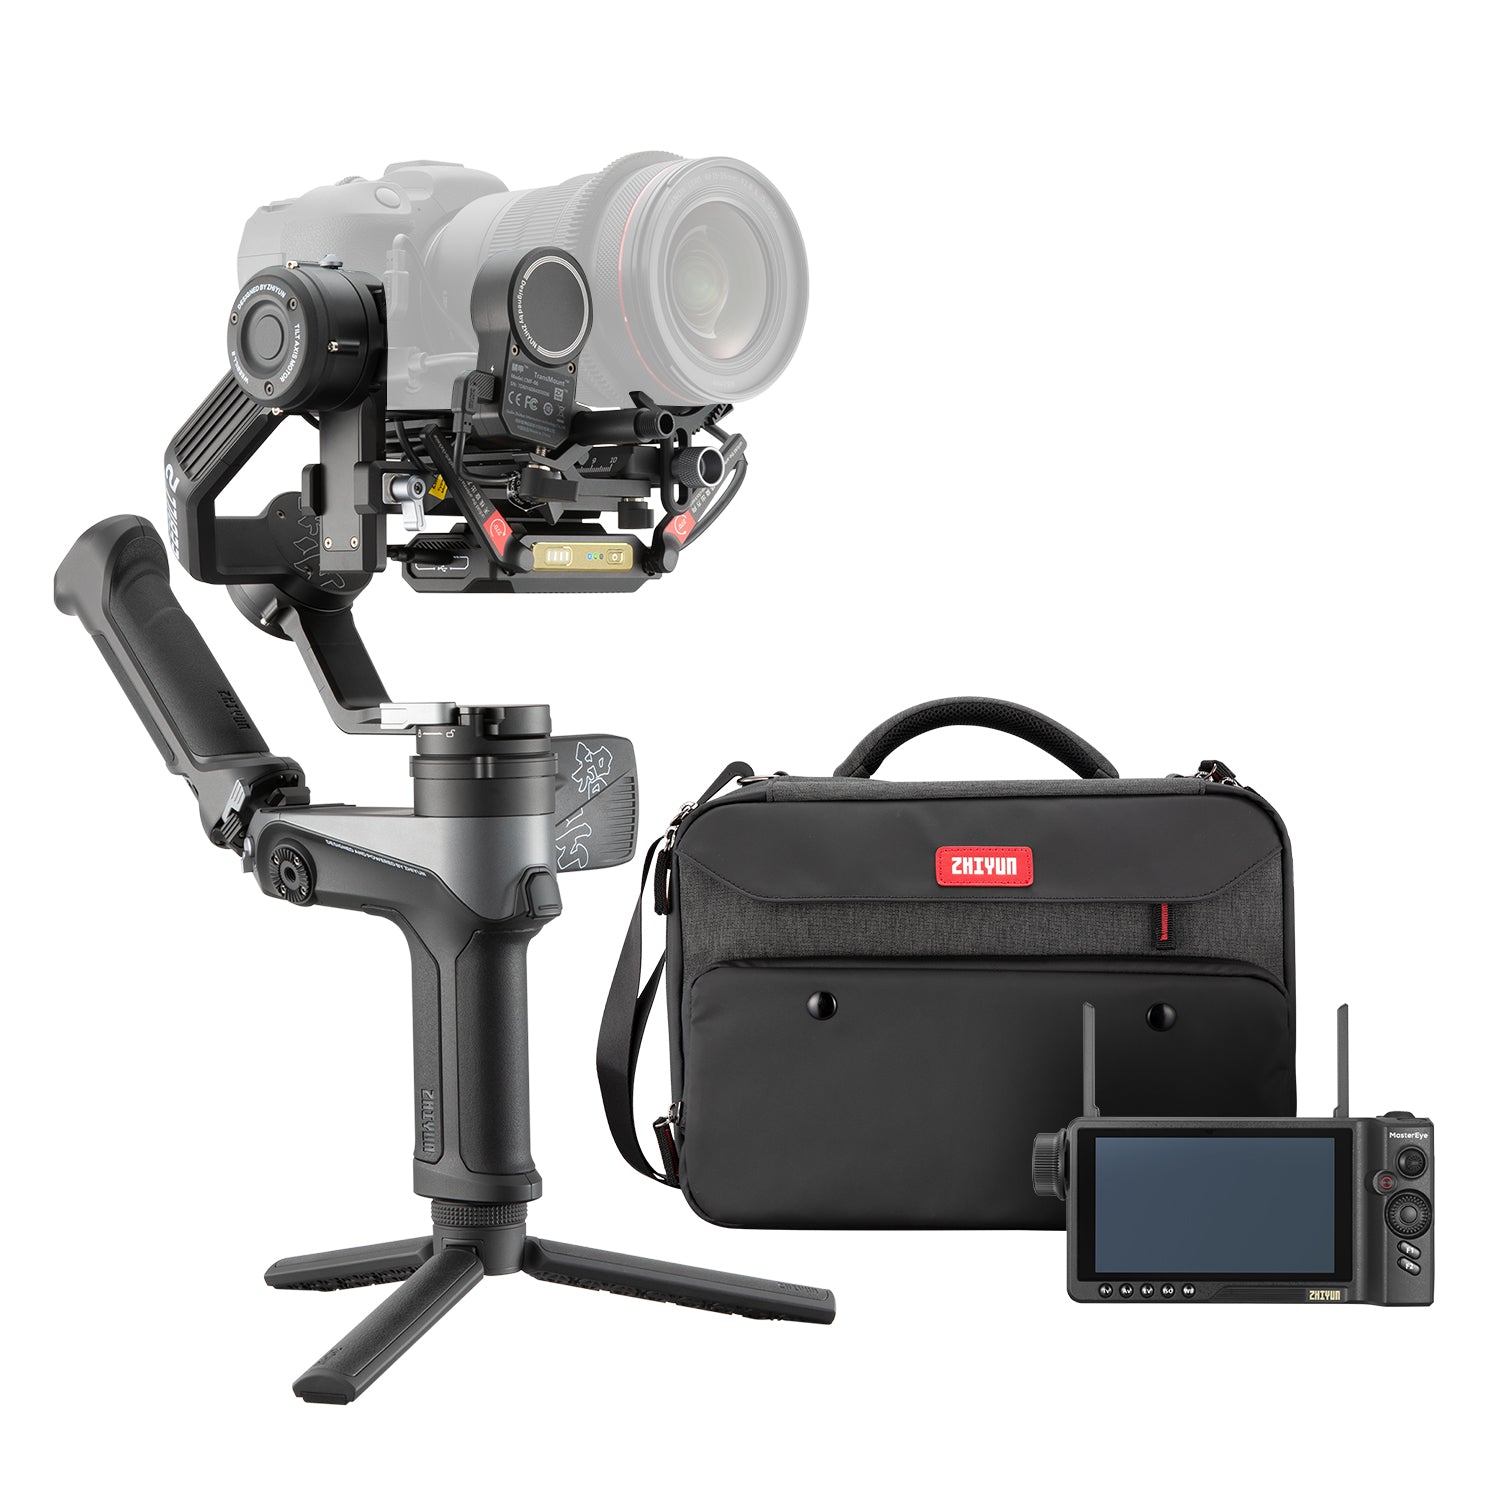 Buy Weebill 2 3-Axis Camera Stabilizer | ZHIYUN UK Store – ZHIYUN